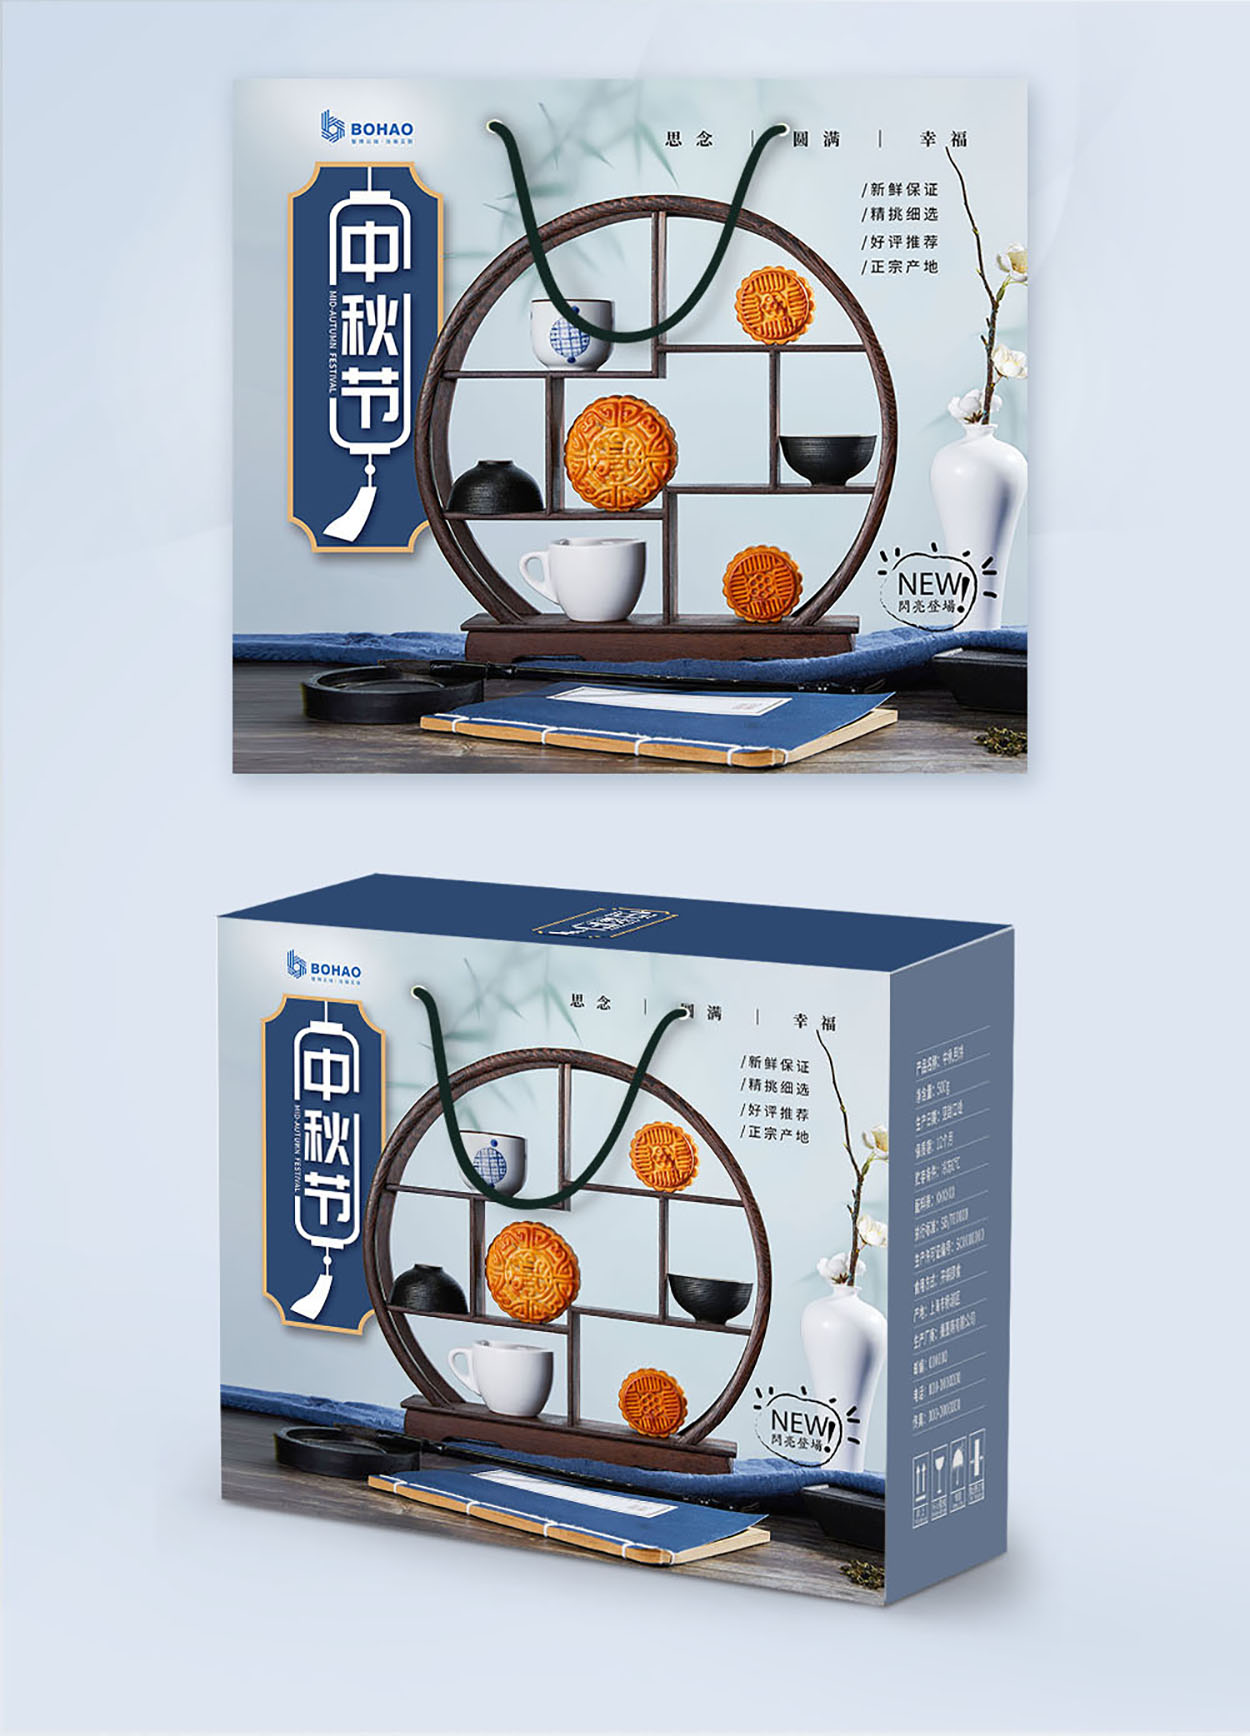 月饼包装设计-深圳博浩公司